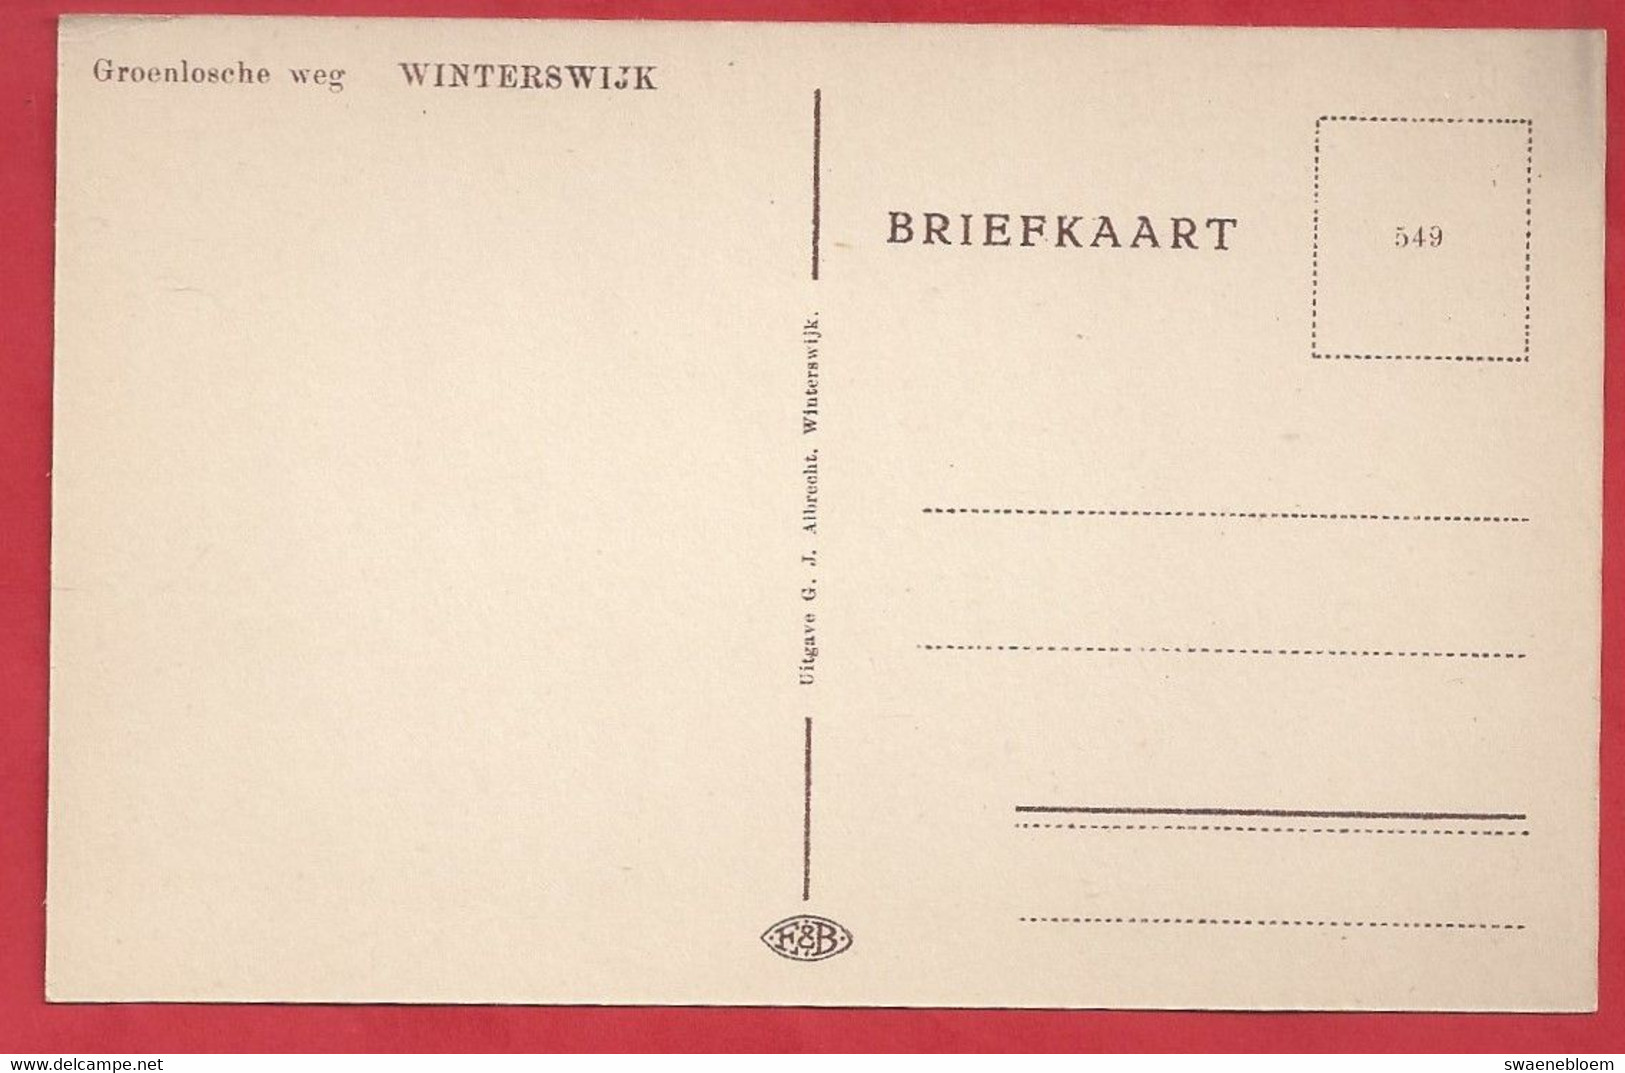 NL.- WINTERSWIJK. GROENLOSEWEG -. Uitgave G.J. Albrecht. - Winterswijk